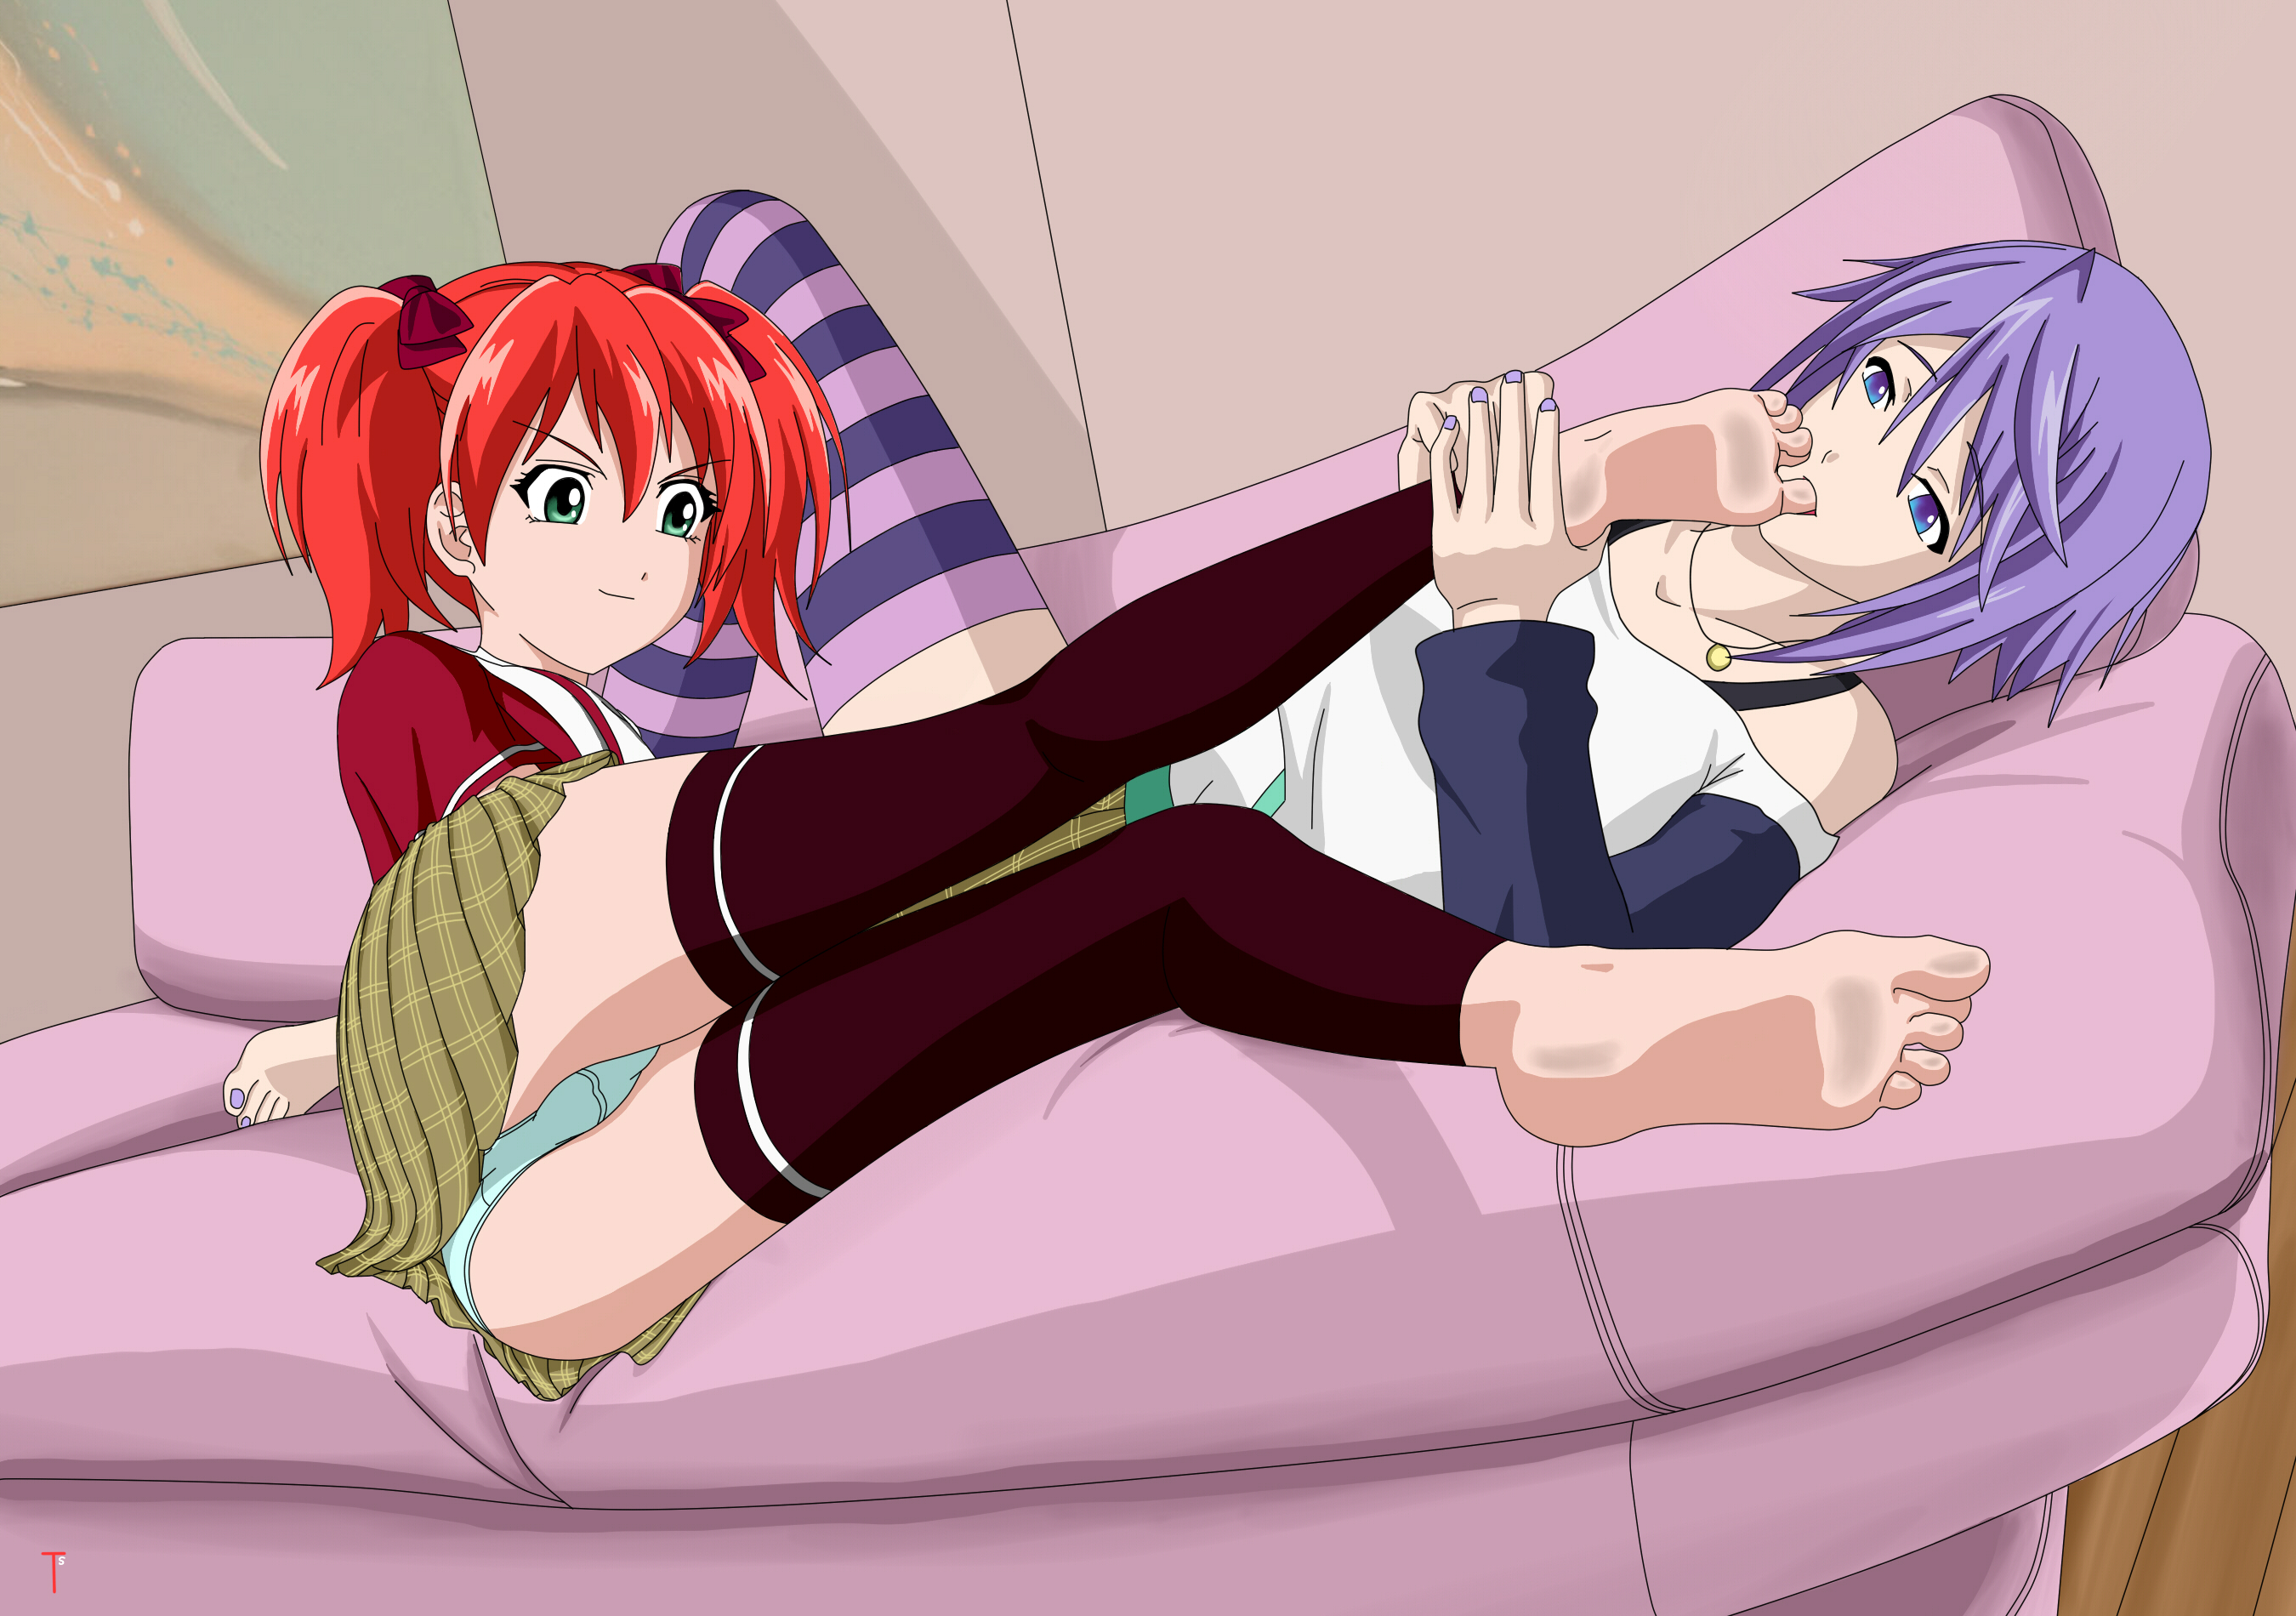 Hentai Lesbian Feet Porn - Anime feet lesbian â¤ï¸ Best adult photos at lesbians.vip